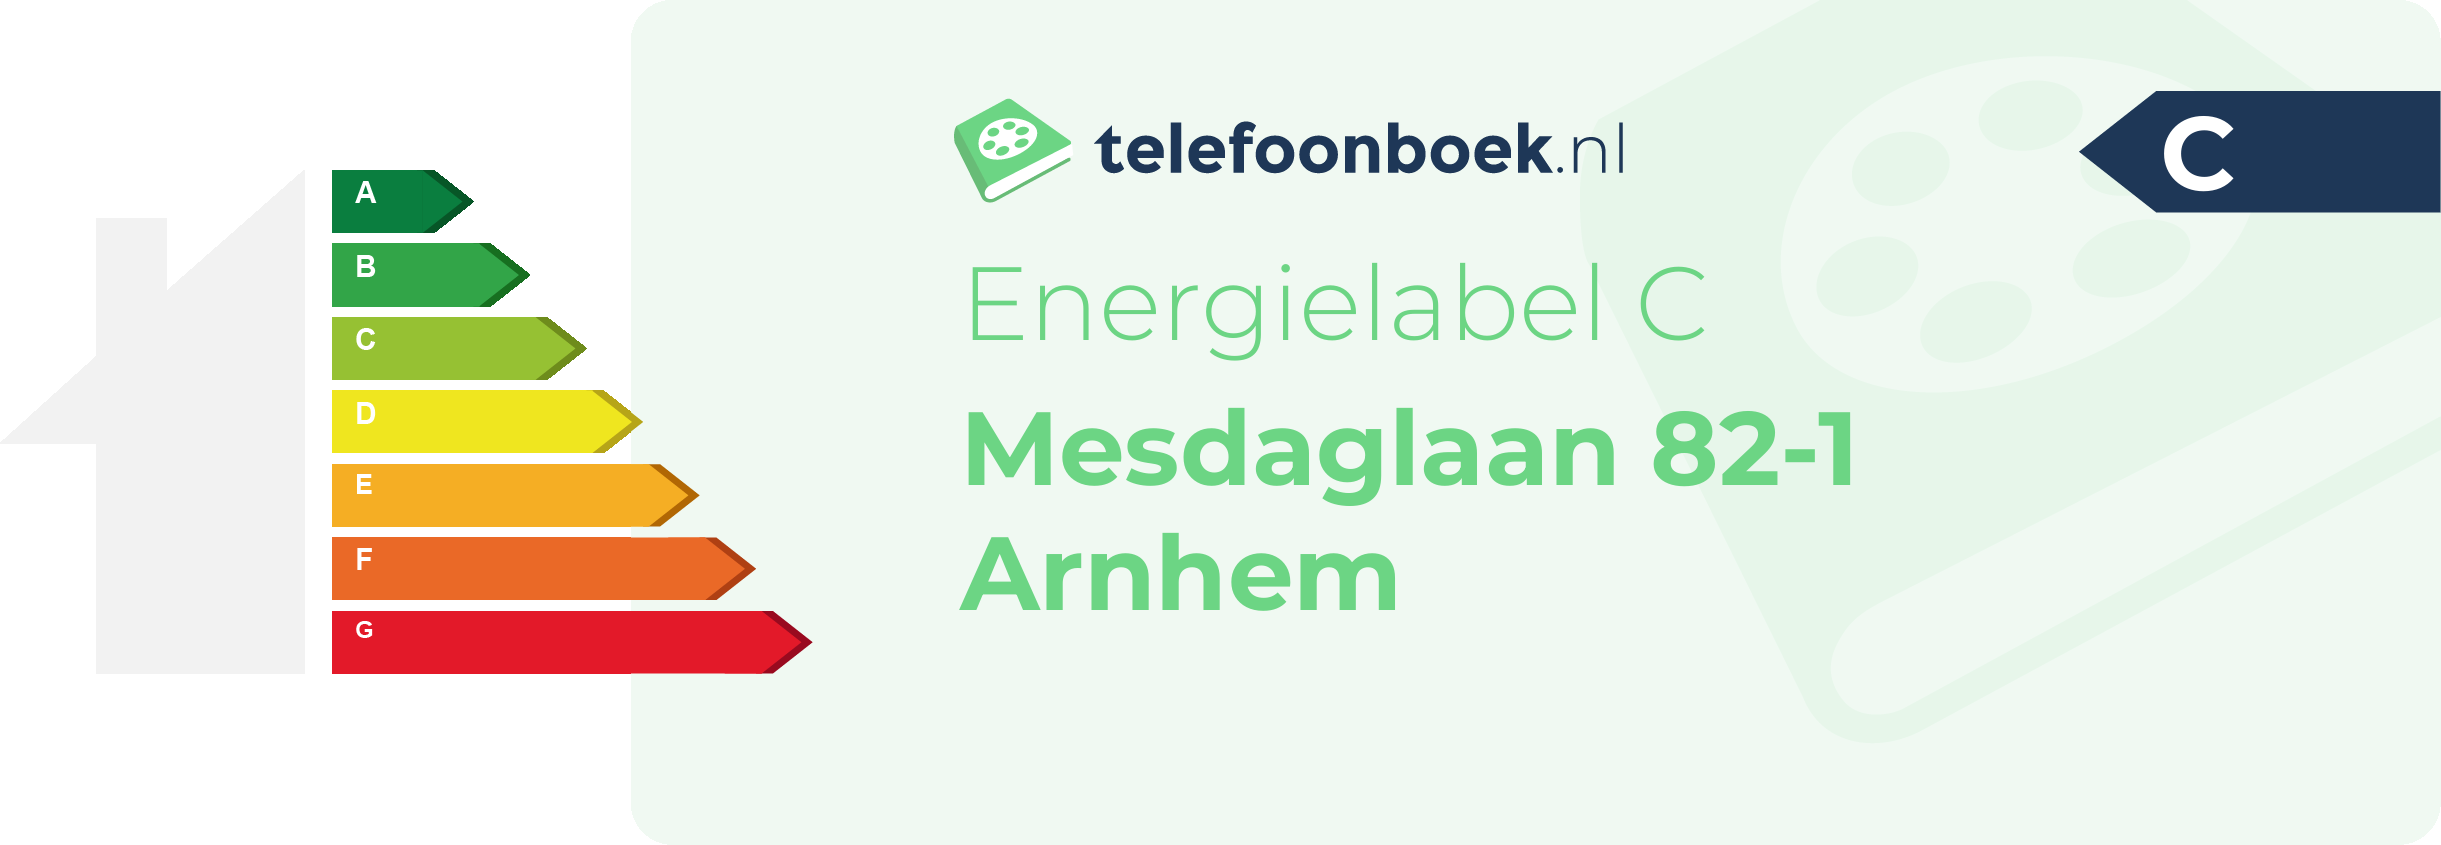 Energielabel Mesdaglaan 82-1 Arnhem